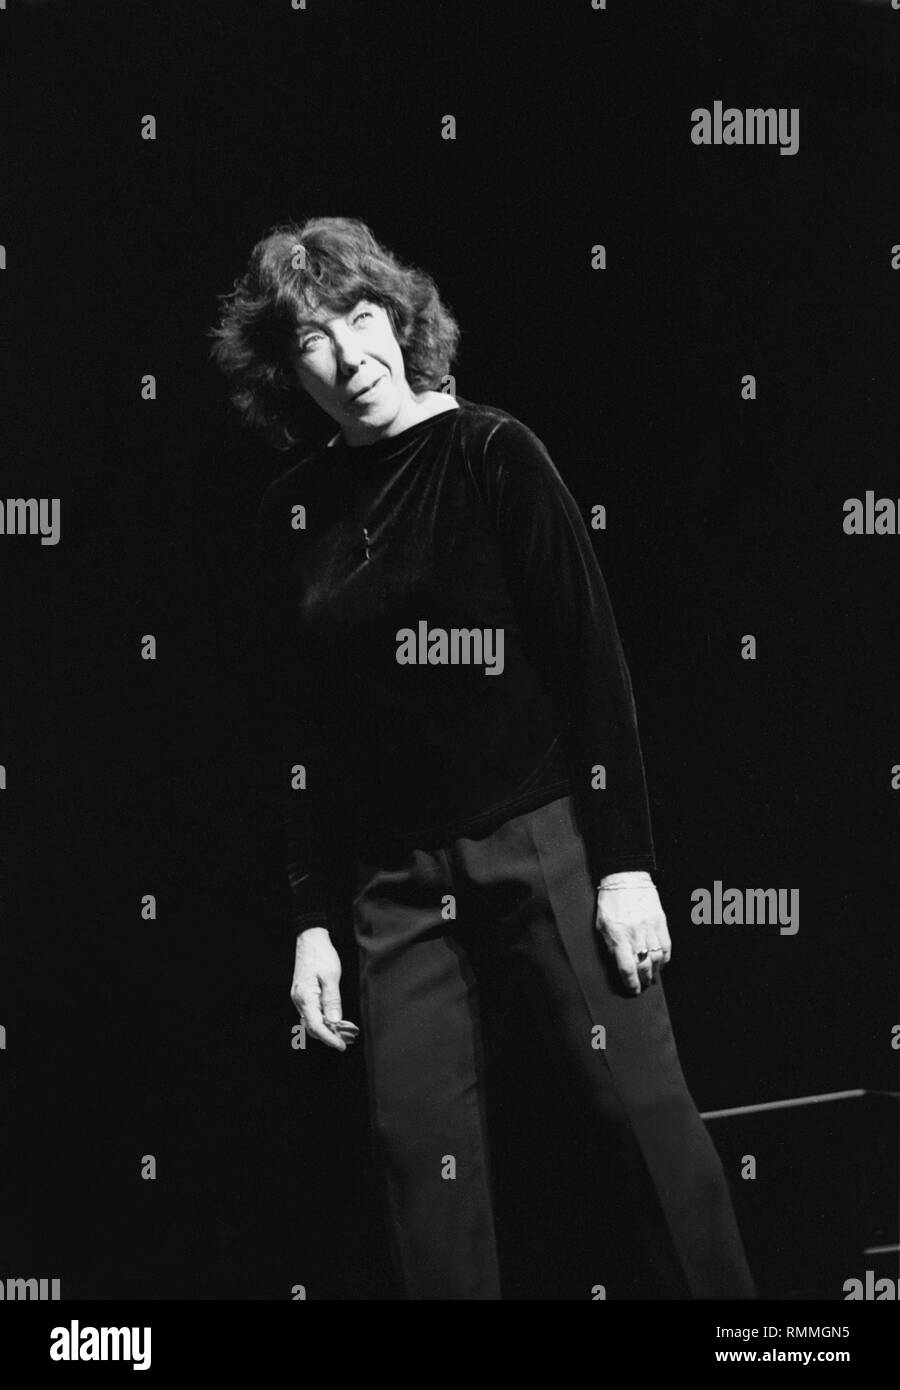 Schauspielerin, Schauspieler, Schriftsteller und Produzent Lily Tomlin ist dargestellt auf der Bühne während eines 'live' Stand up Comedy Show. Stockfoto